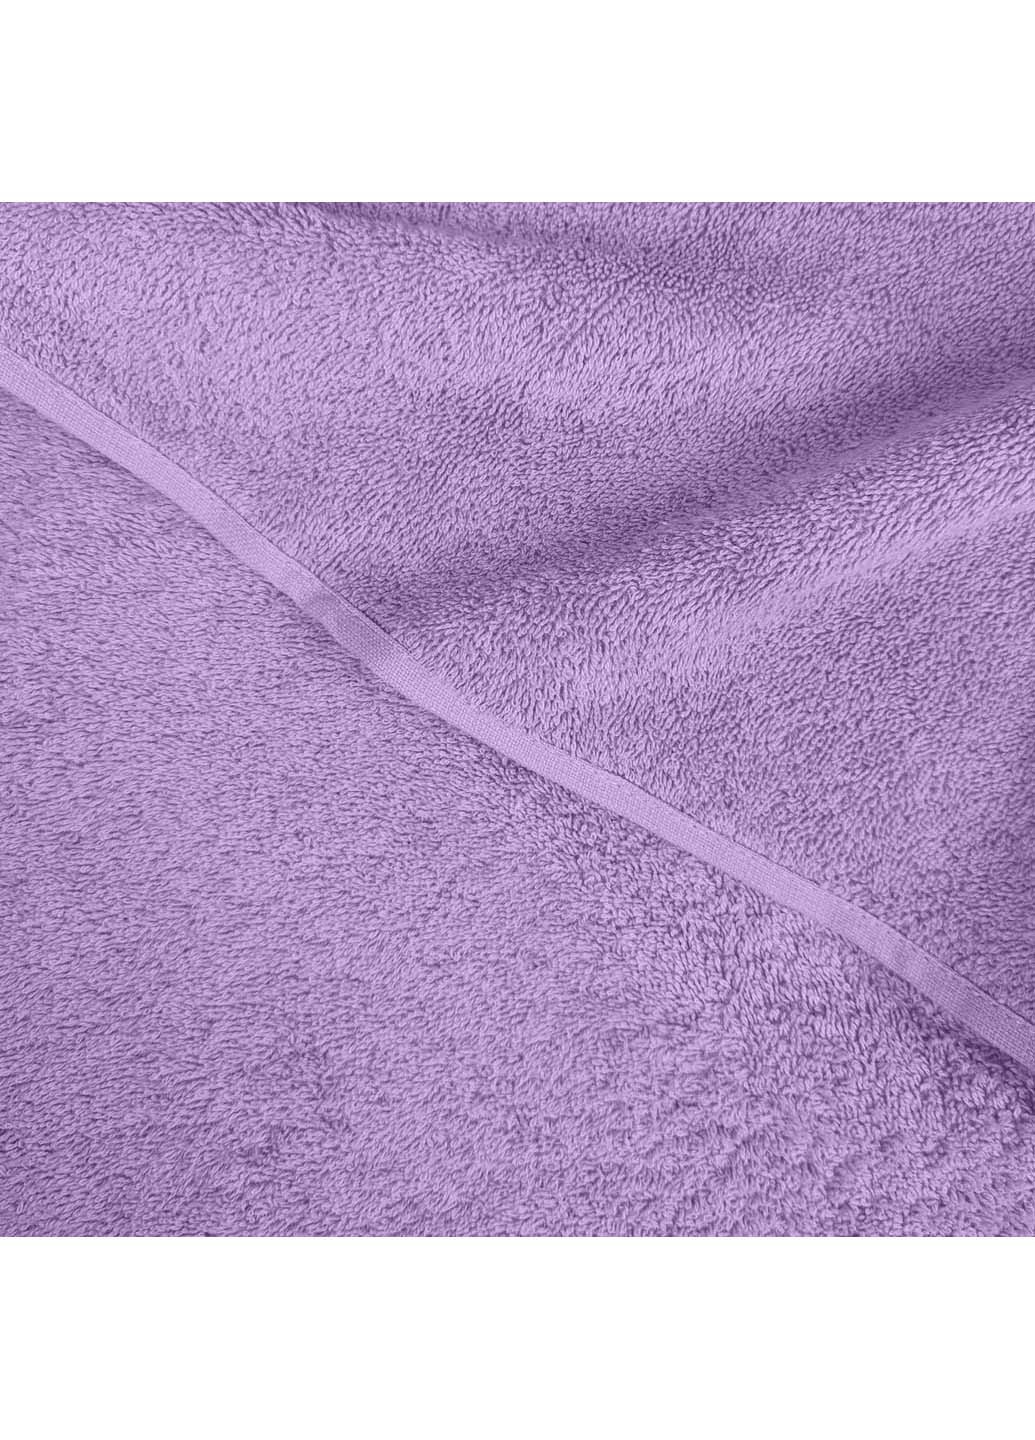 Cosas полотенца махровые aurora 3 шт лавандовый производство -